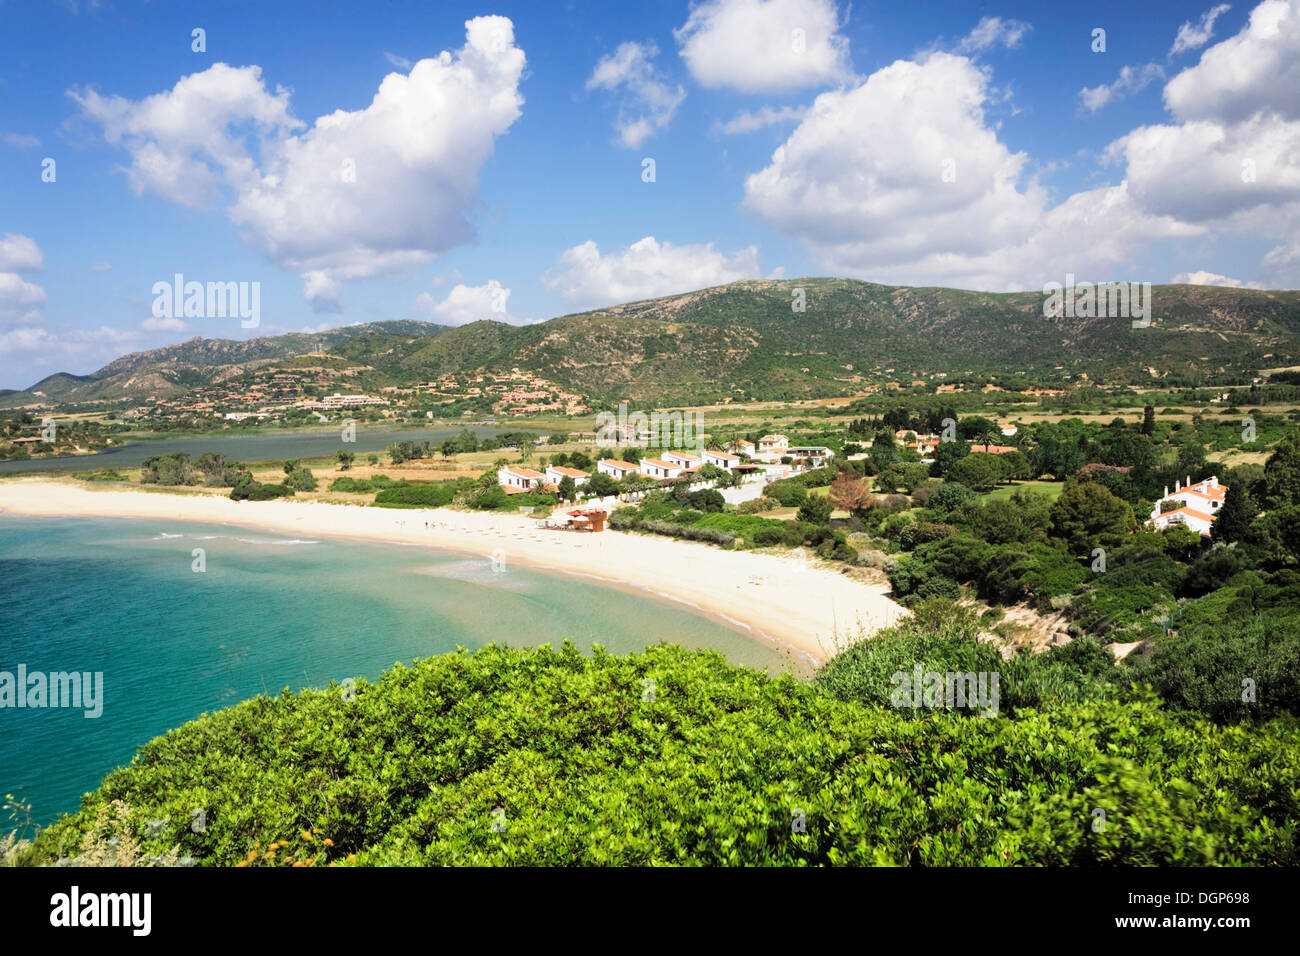 Spiaggia Sa Colonia playa en la costa del sur cerca de la Torre de Chia,  Sulcis Provincia, Cerdeña, Italia, Europa Fotografía de stock - Alamy